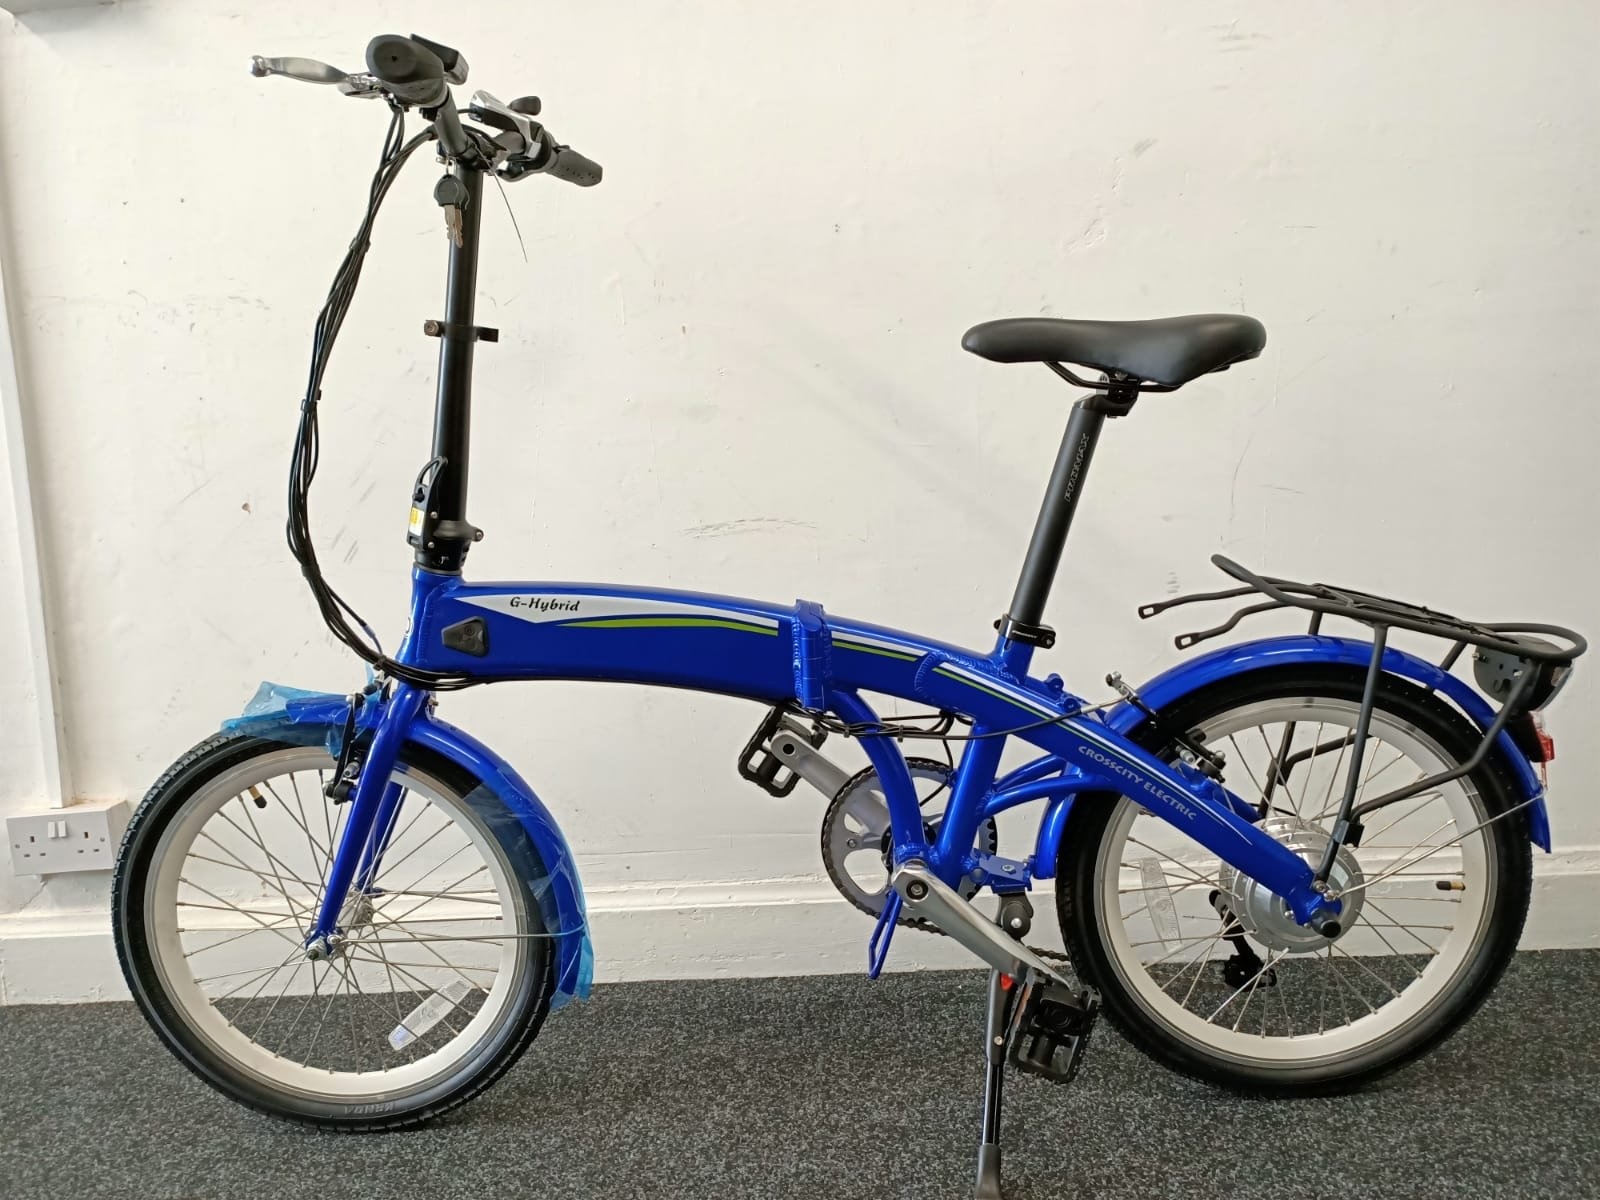 Folding Ebike – G-hybrid – Crosscity – Blue – Built-In Battery – With Carrier – Green Hybrid Bikes